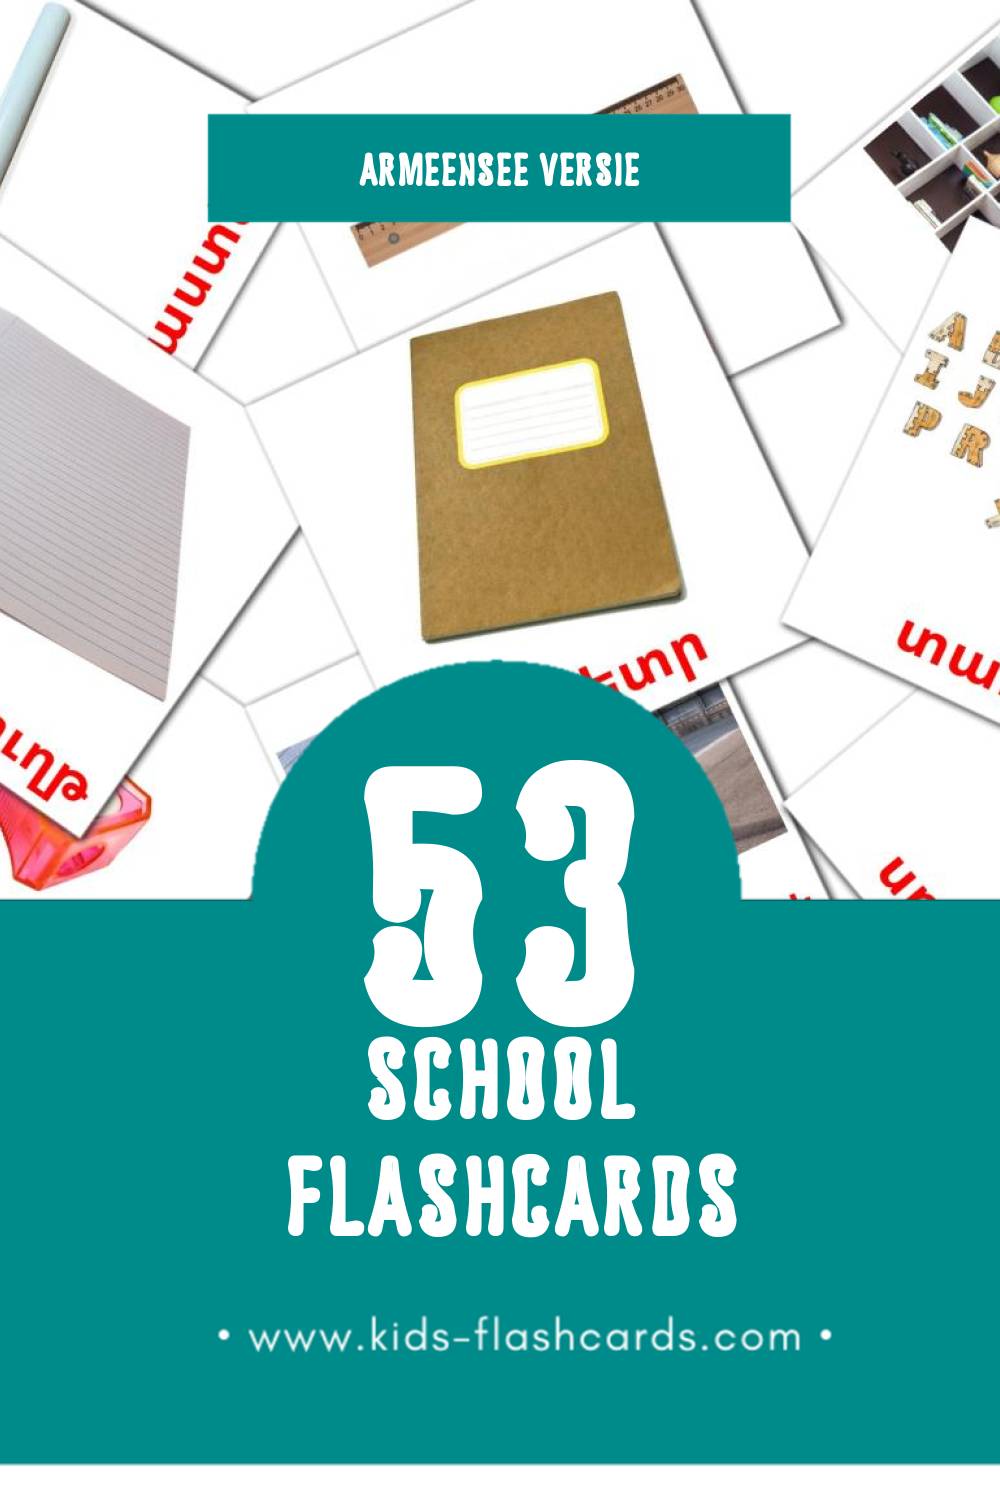 Visuele Դպրոց Flashcards voor Kleuters (53 kaarten in het Armeense)